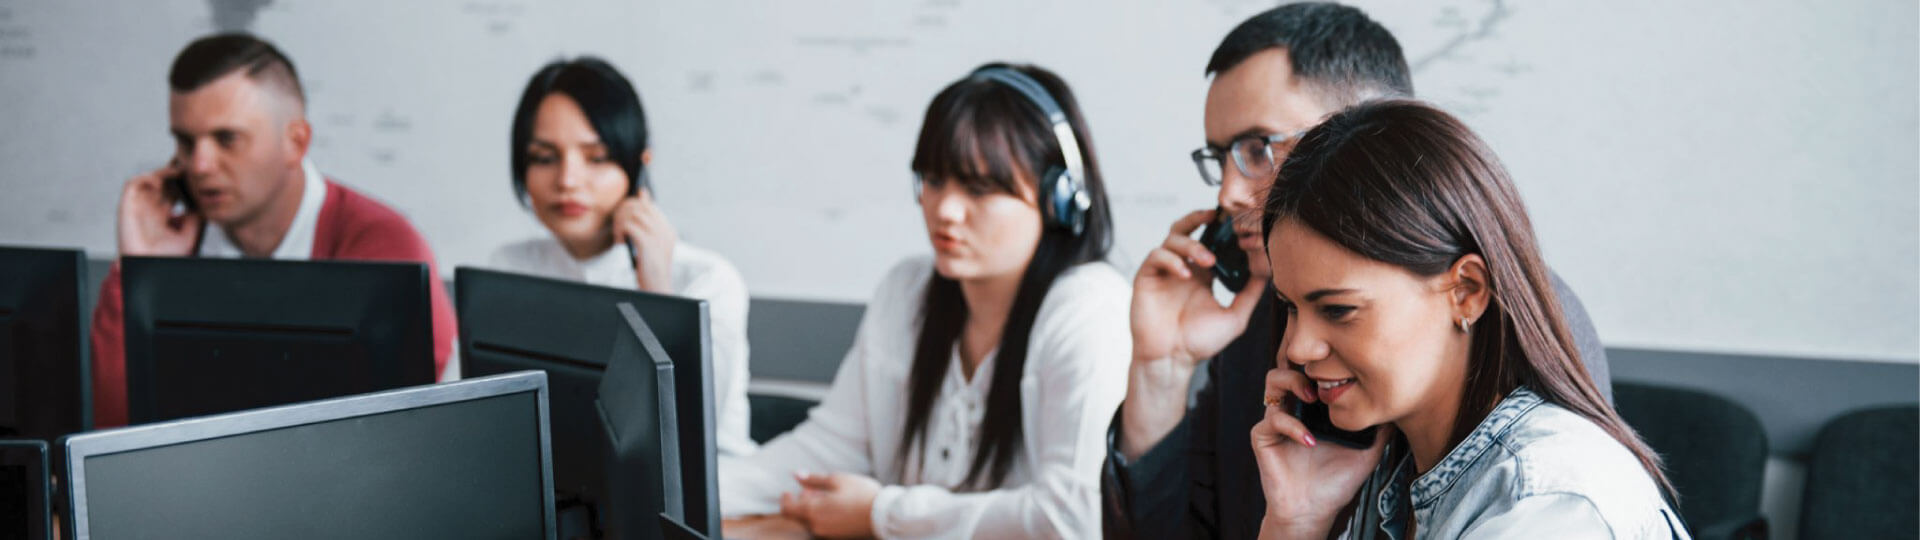 Centrala VOIP – 5 realnych korzyści dla Twojej firmy